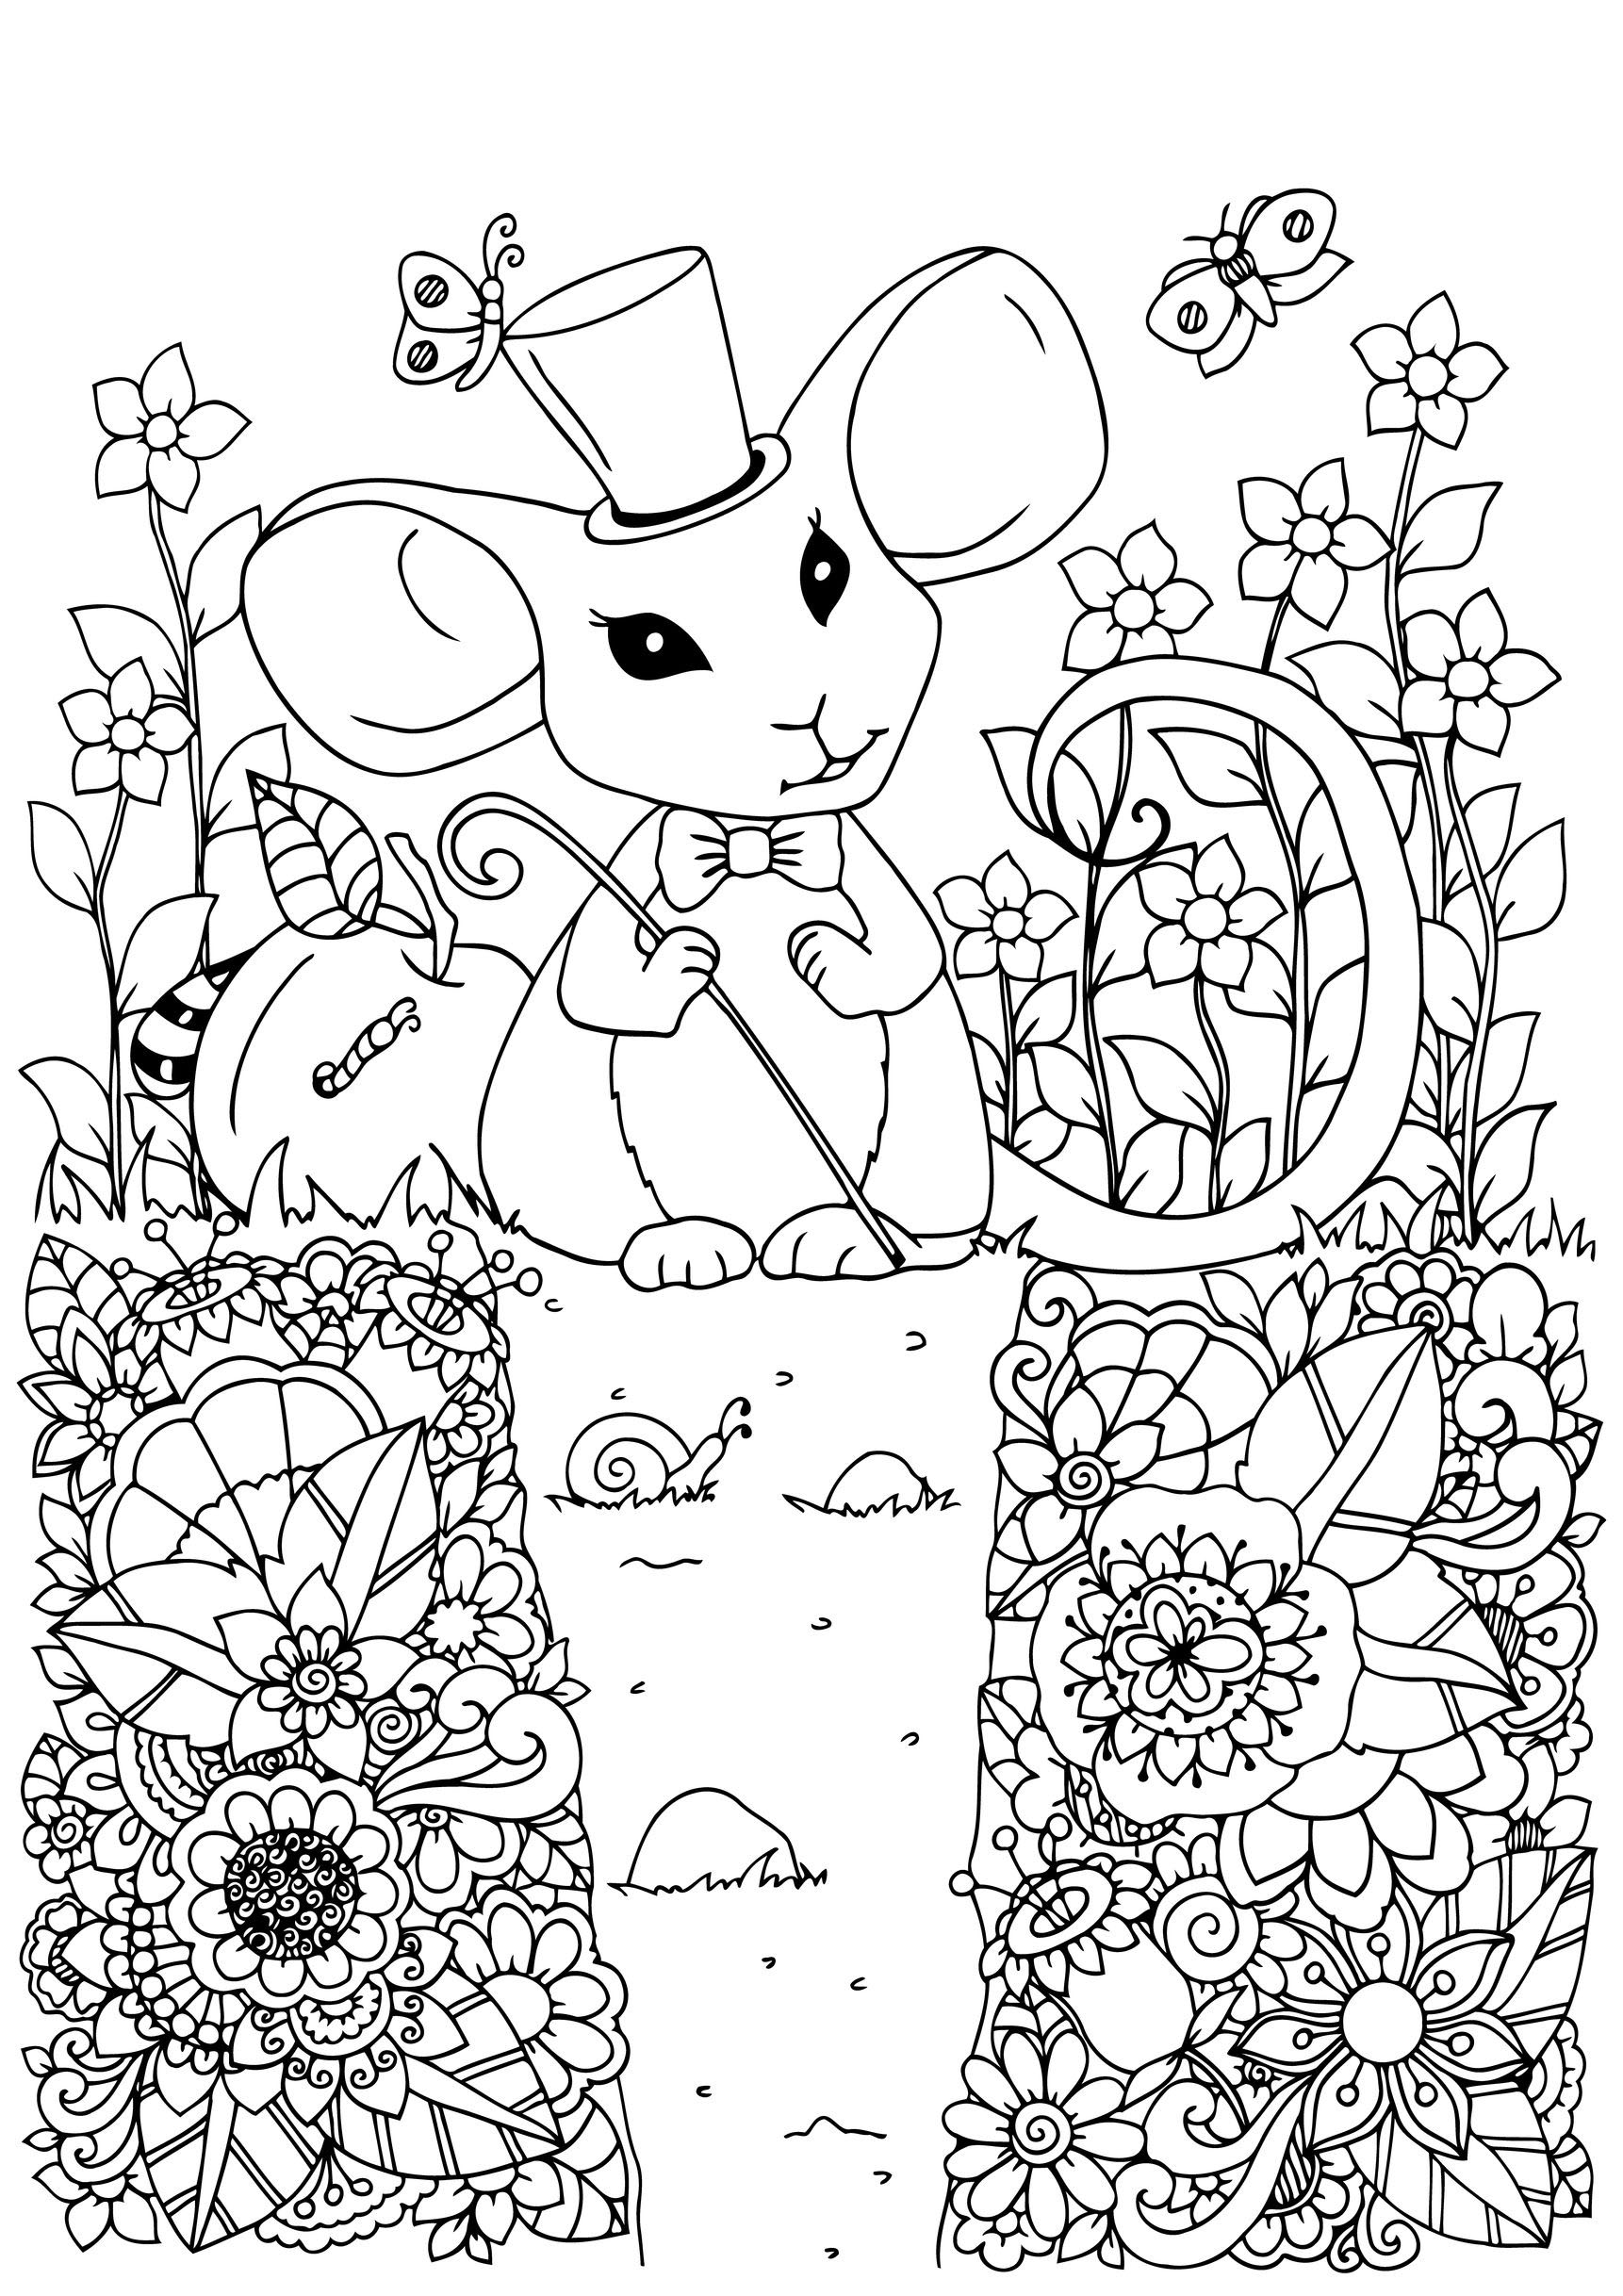 Rato bonito com o seu chapéu de mágico num jardim cheio de belas flores, Fonte : 123rf   Artista : Tanvetka